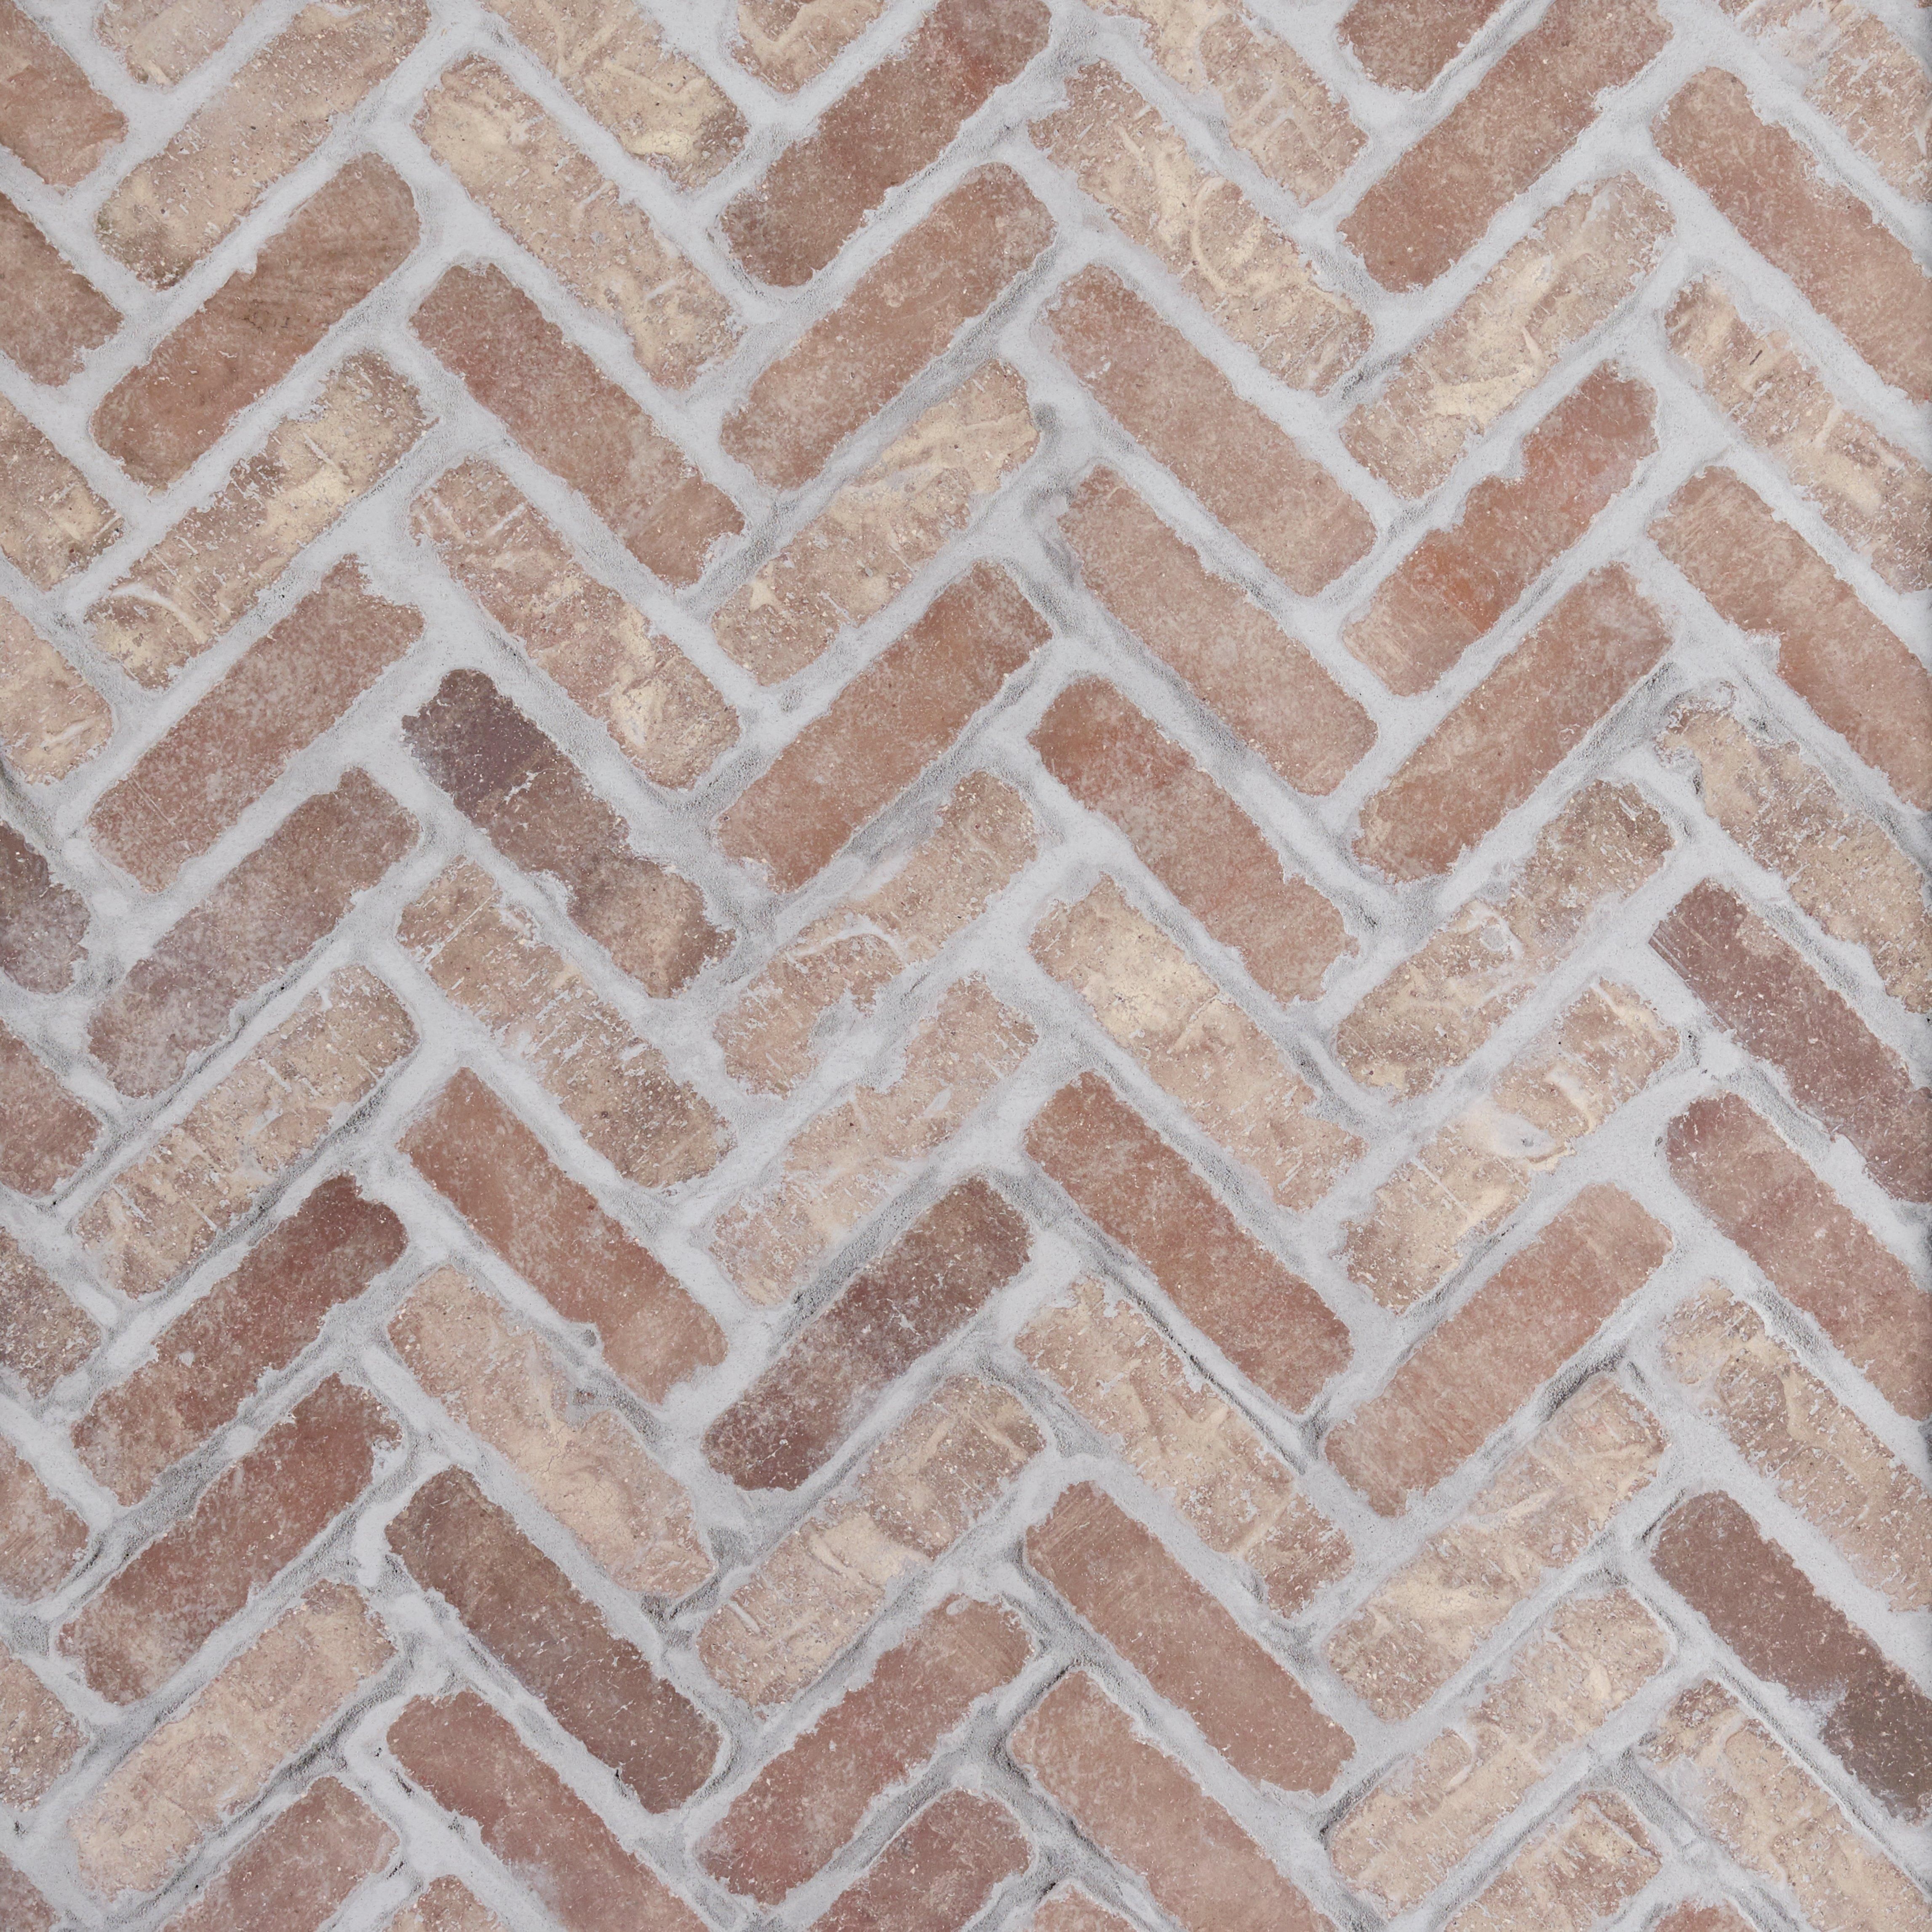 Floor Decor Summer Catalog 2021, Thin Brick Tile Floor And Decor